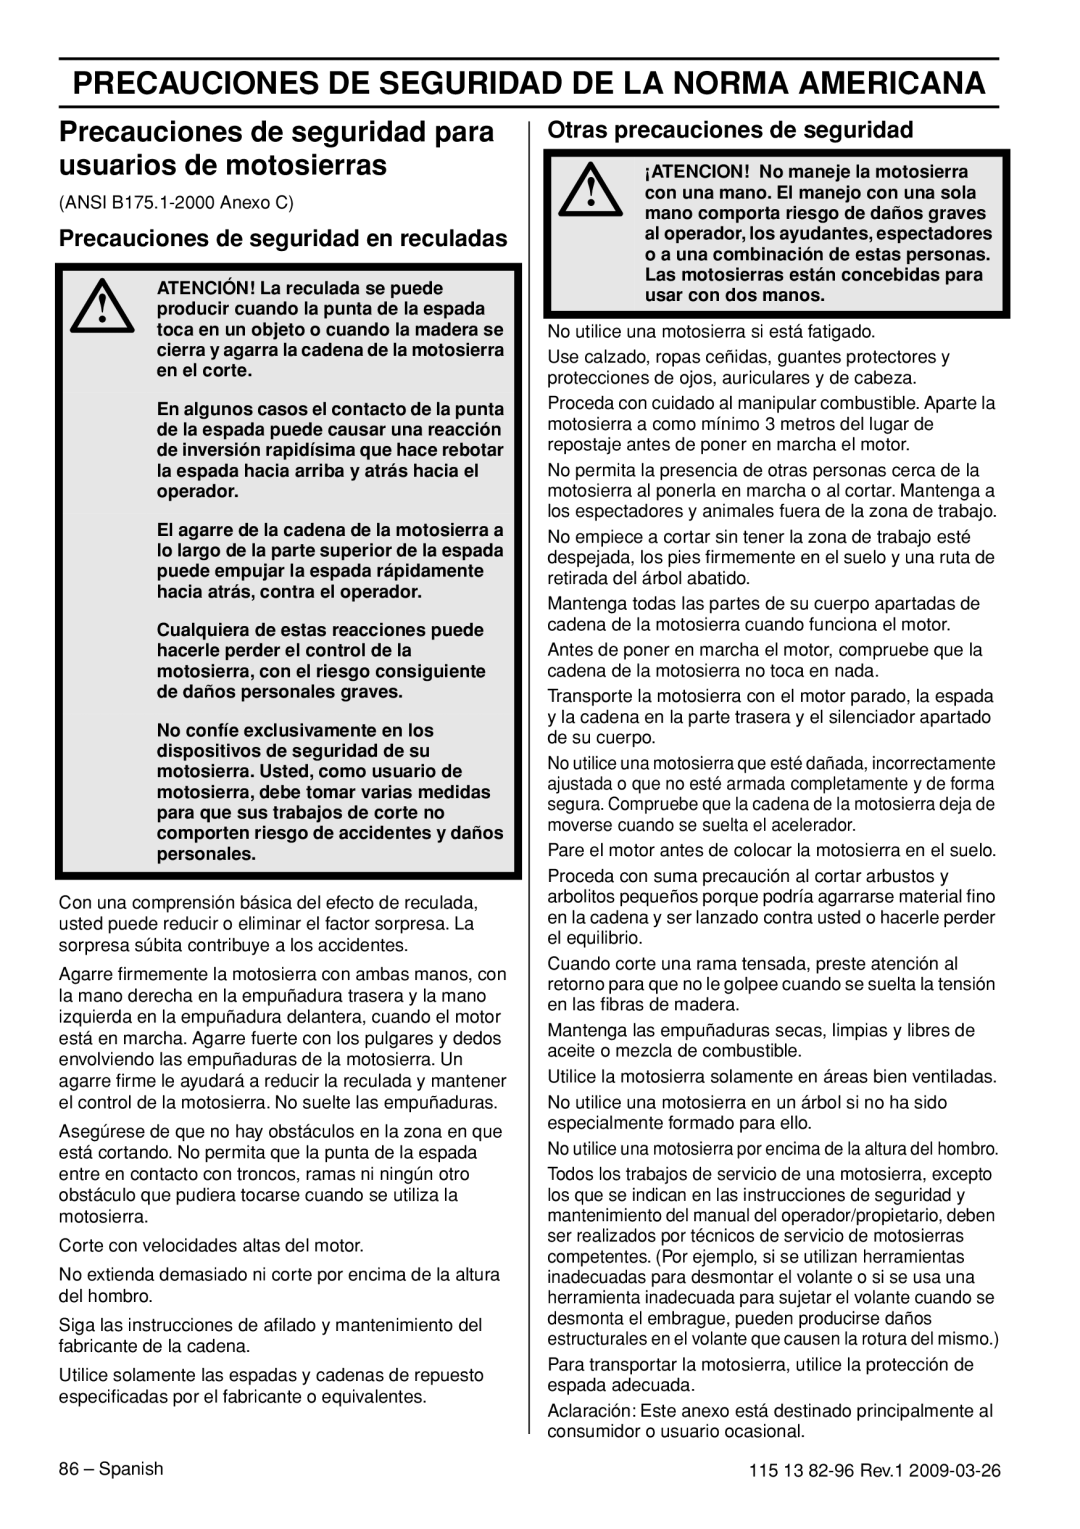 Husqvarna 460 Rancher manual Precauciones De Seguridad De La Norma Americana, Precauciones de seguridad en reculadas 